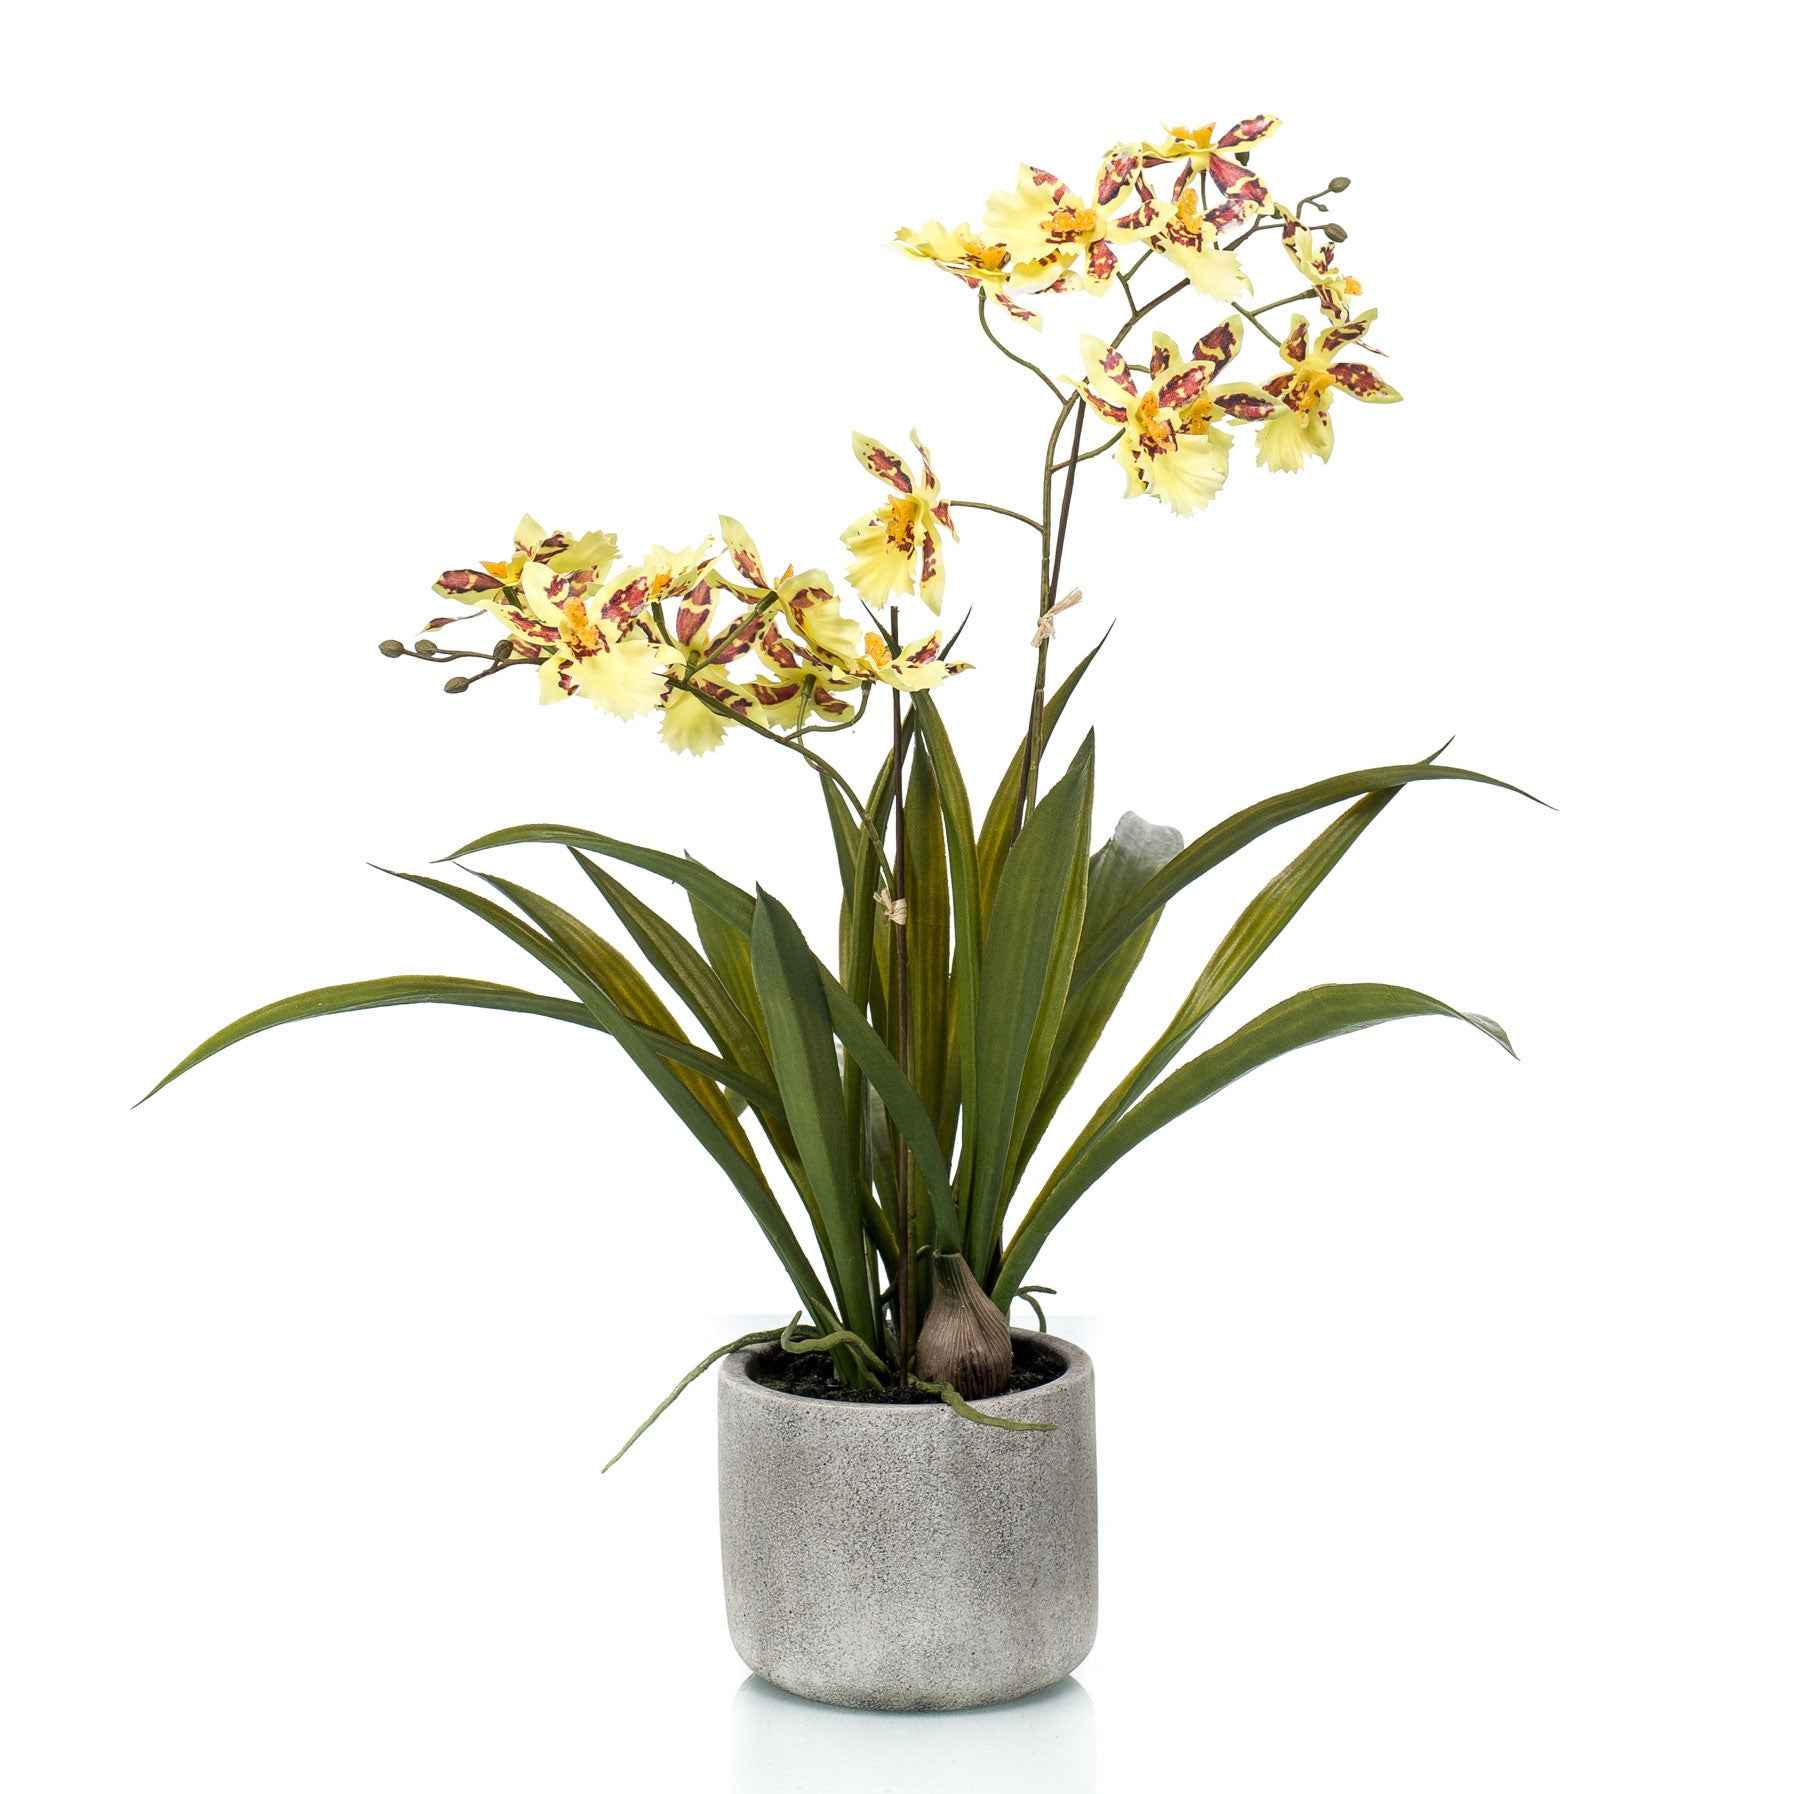 Kunstplant Orchidee Oncidium geel incl. keramische sierpot - Groene kunstplanten